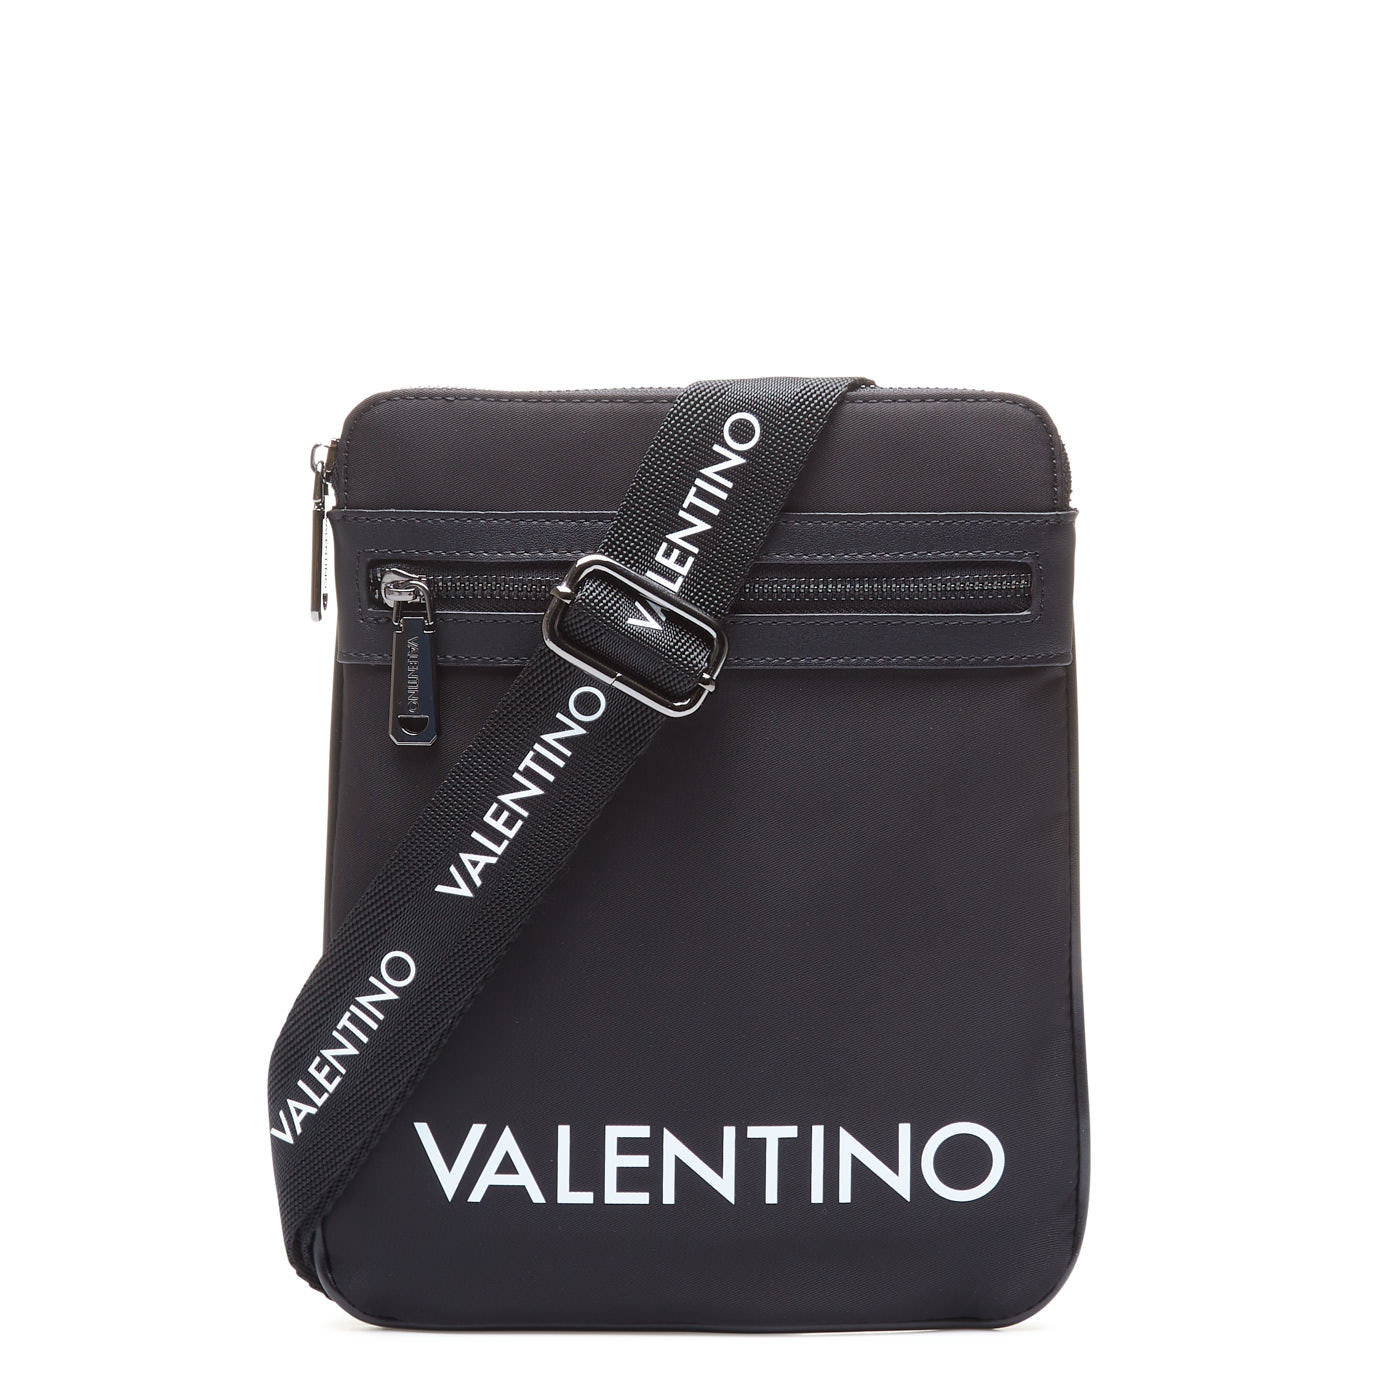 Valentino bags KYLO sachet nero Borse a Spalla VBS47303 Bandoliera